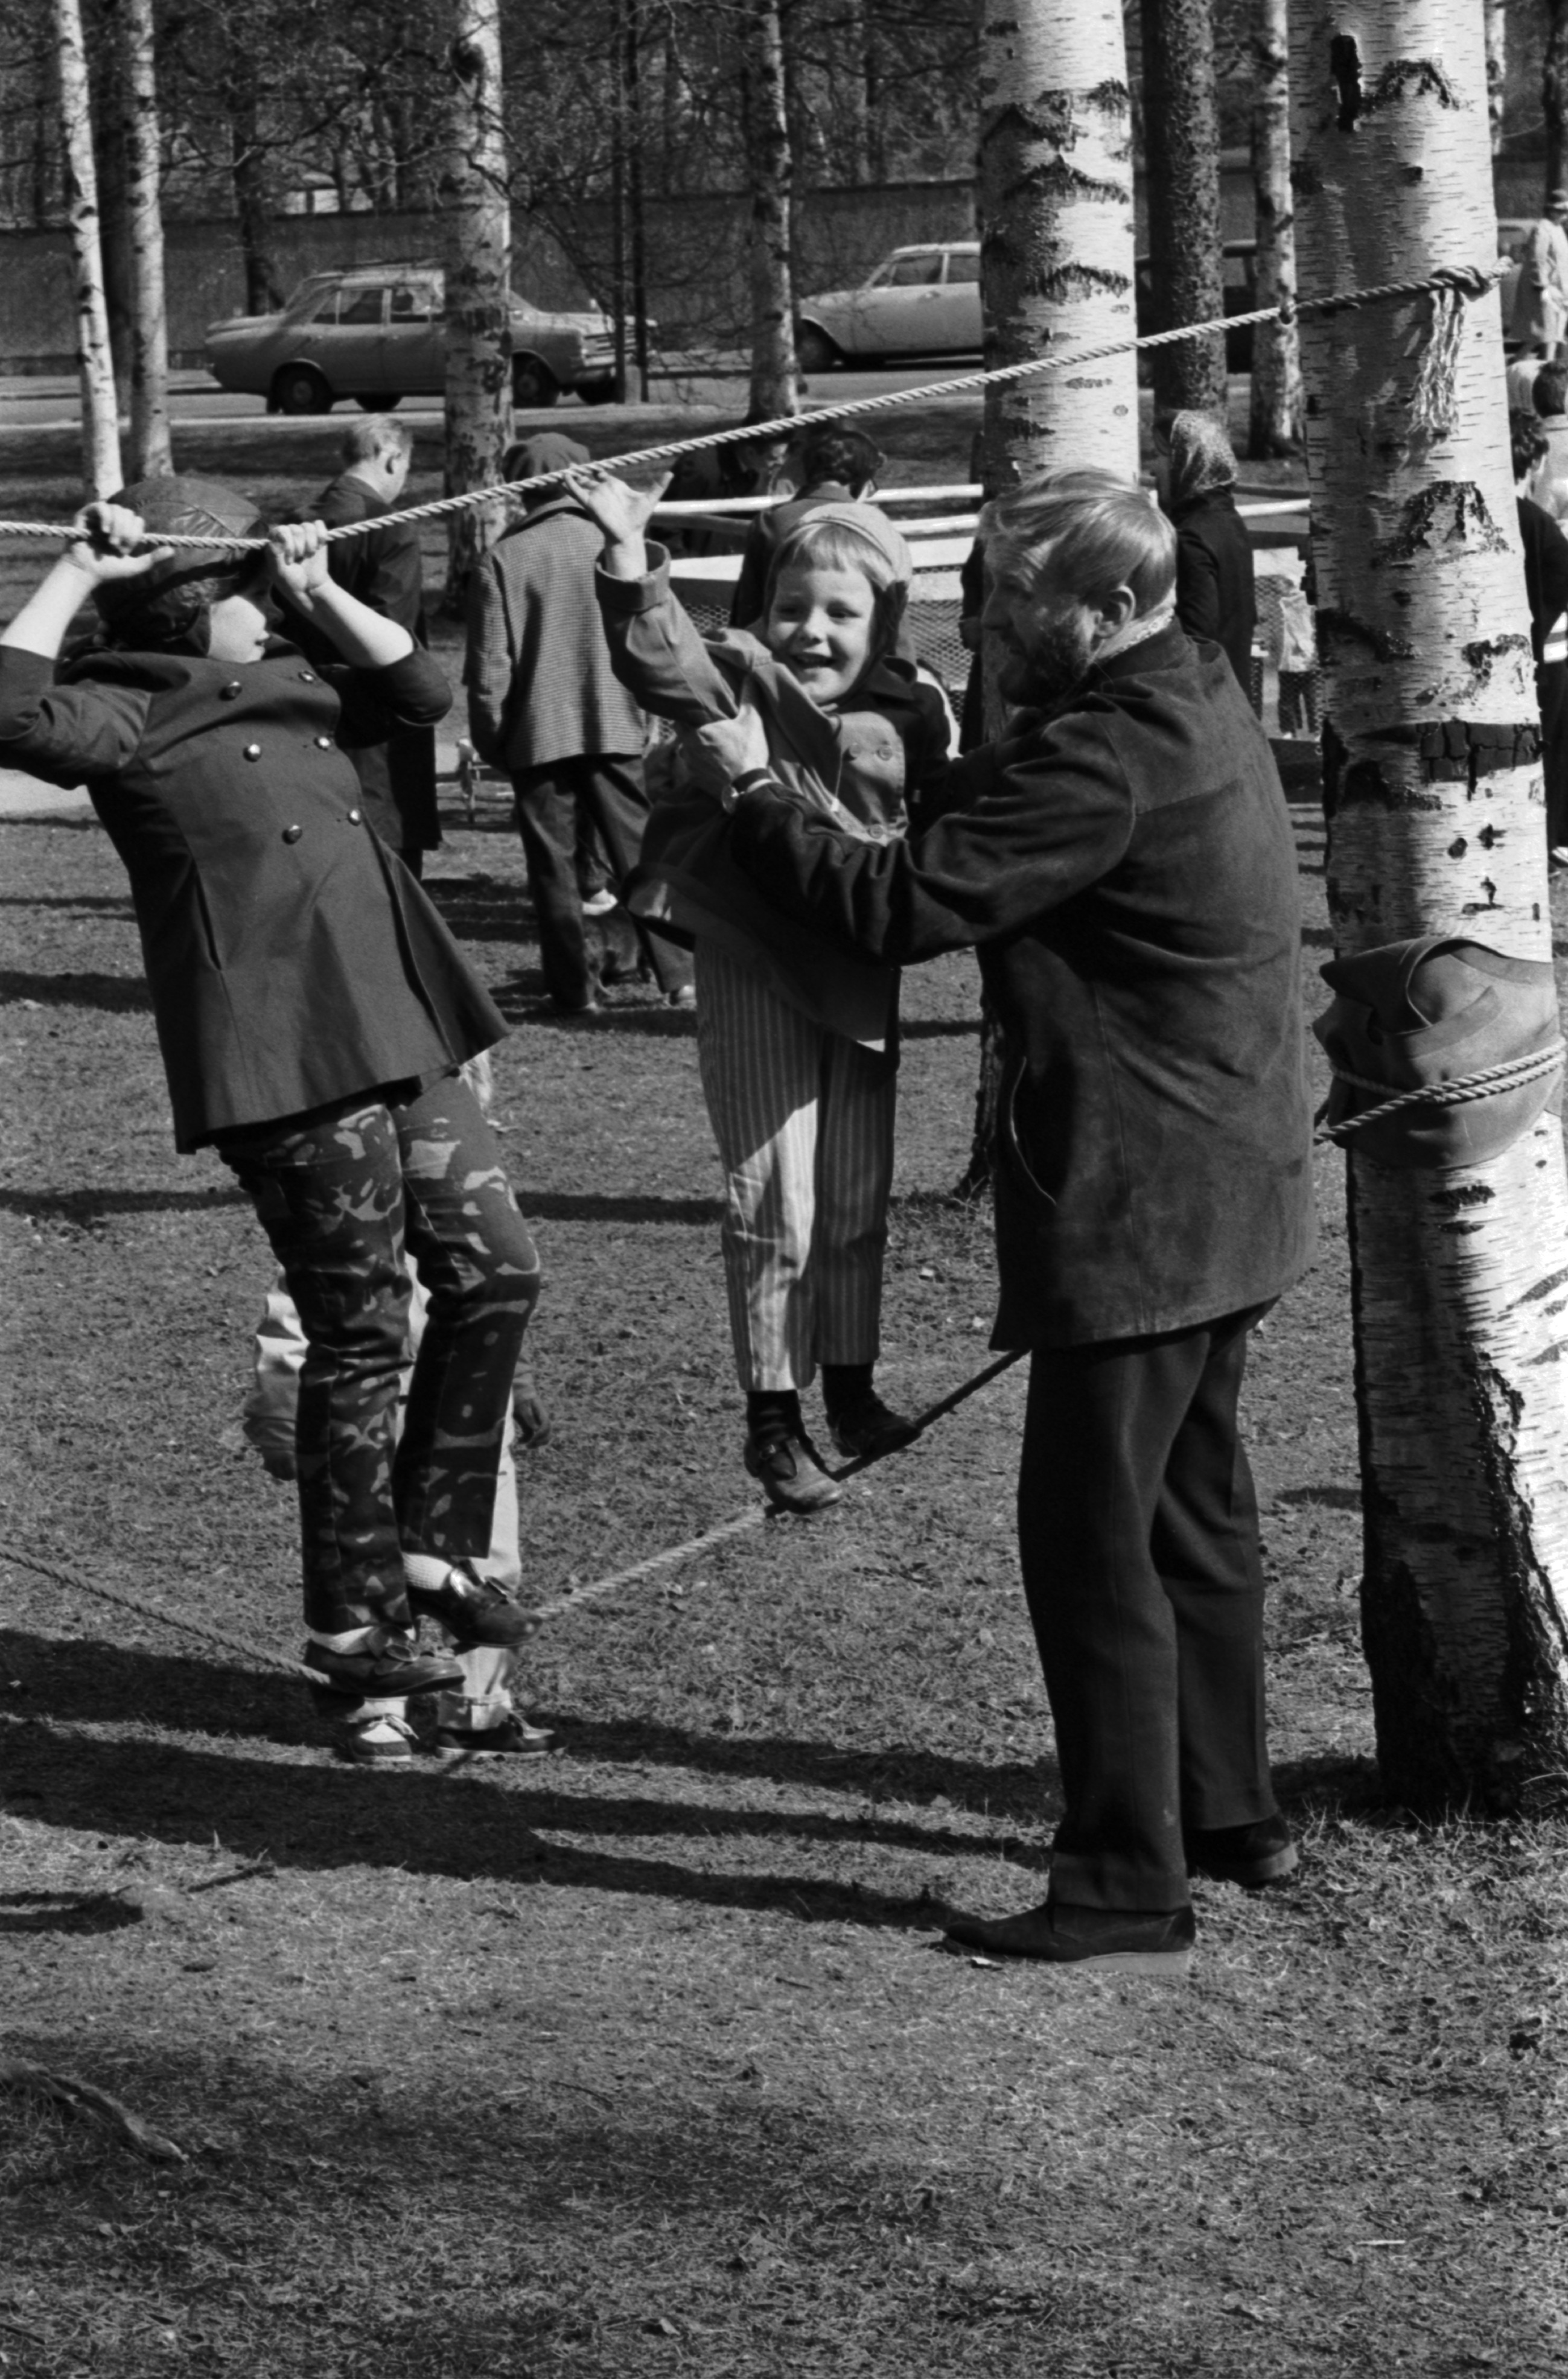 Sibeliuksen puisto. Helsingin juhlaviikot. Mies auttaa puiden väliin pingotetuilla köysillä kiipeilevää tyttöä Sibeliuksen puistossa järjestetyssä puistotapahtumassa.